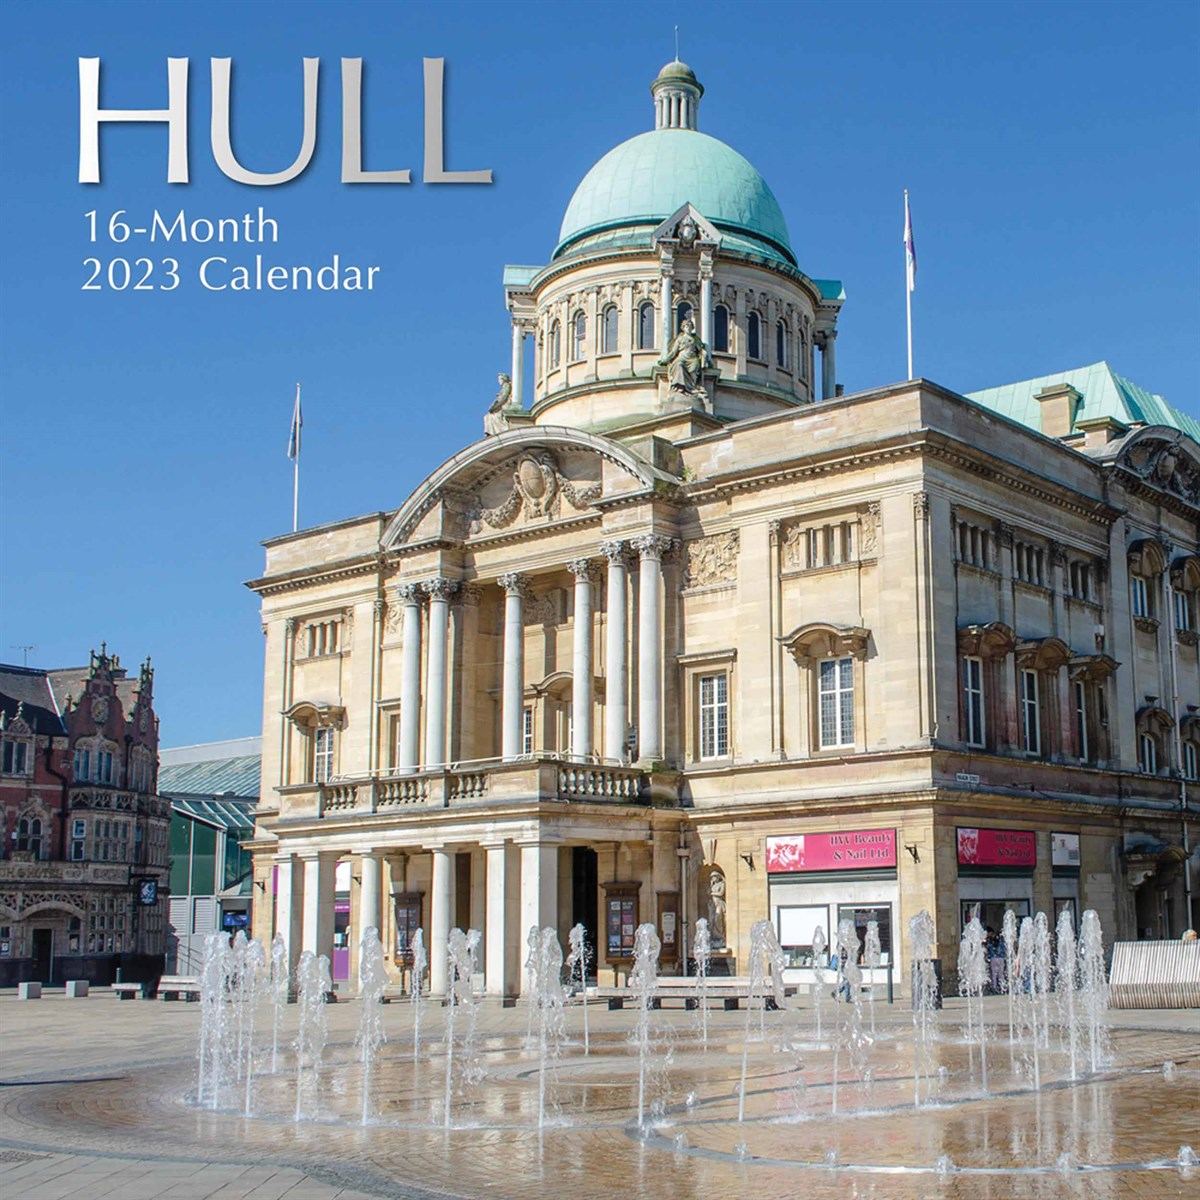 Hull 2023 Calendars